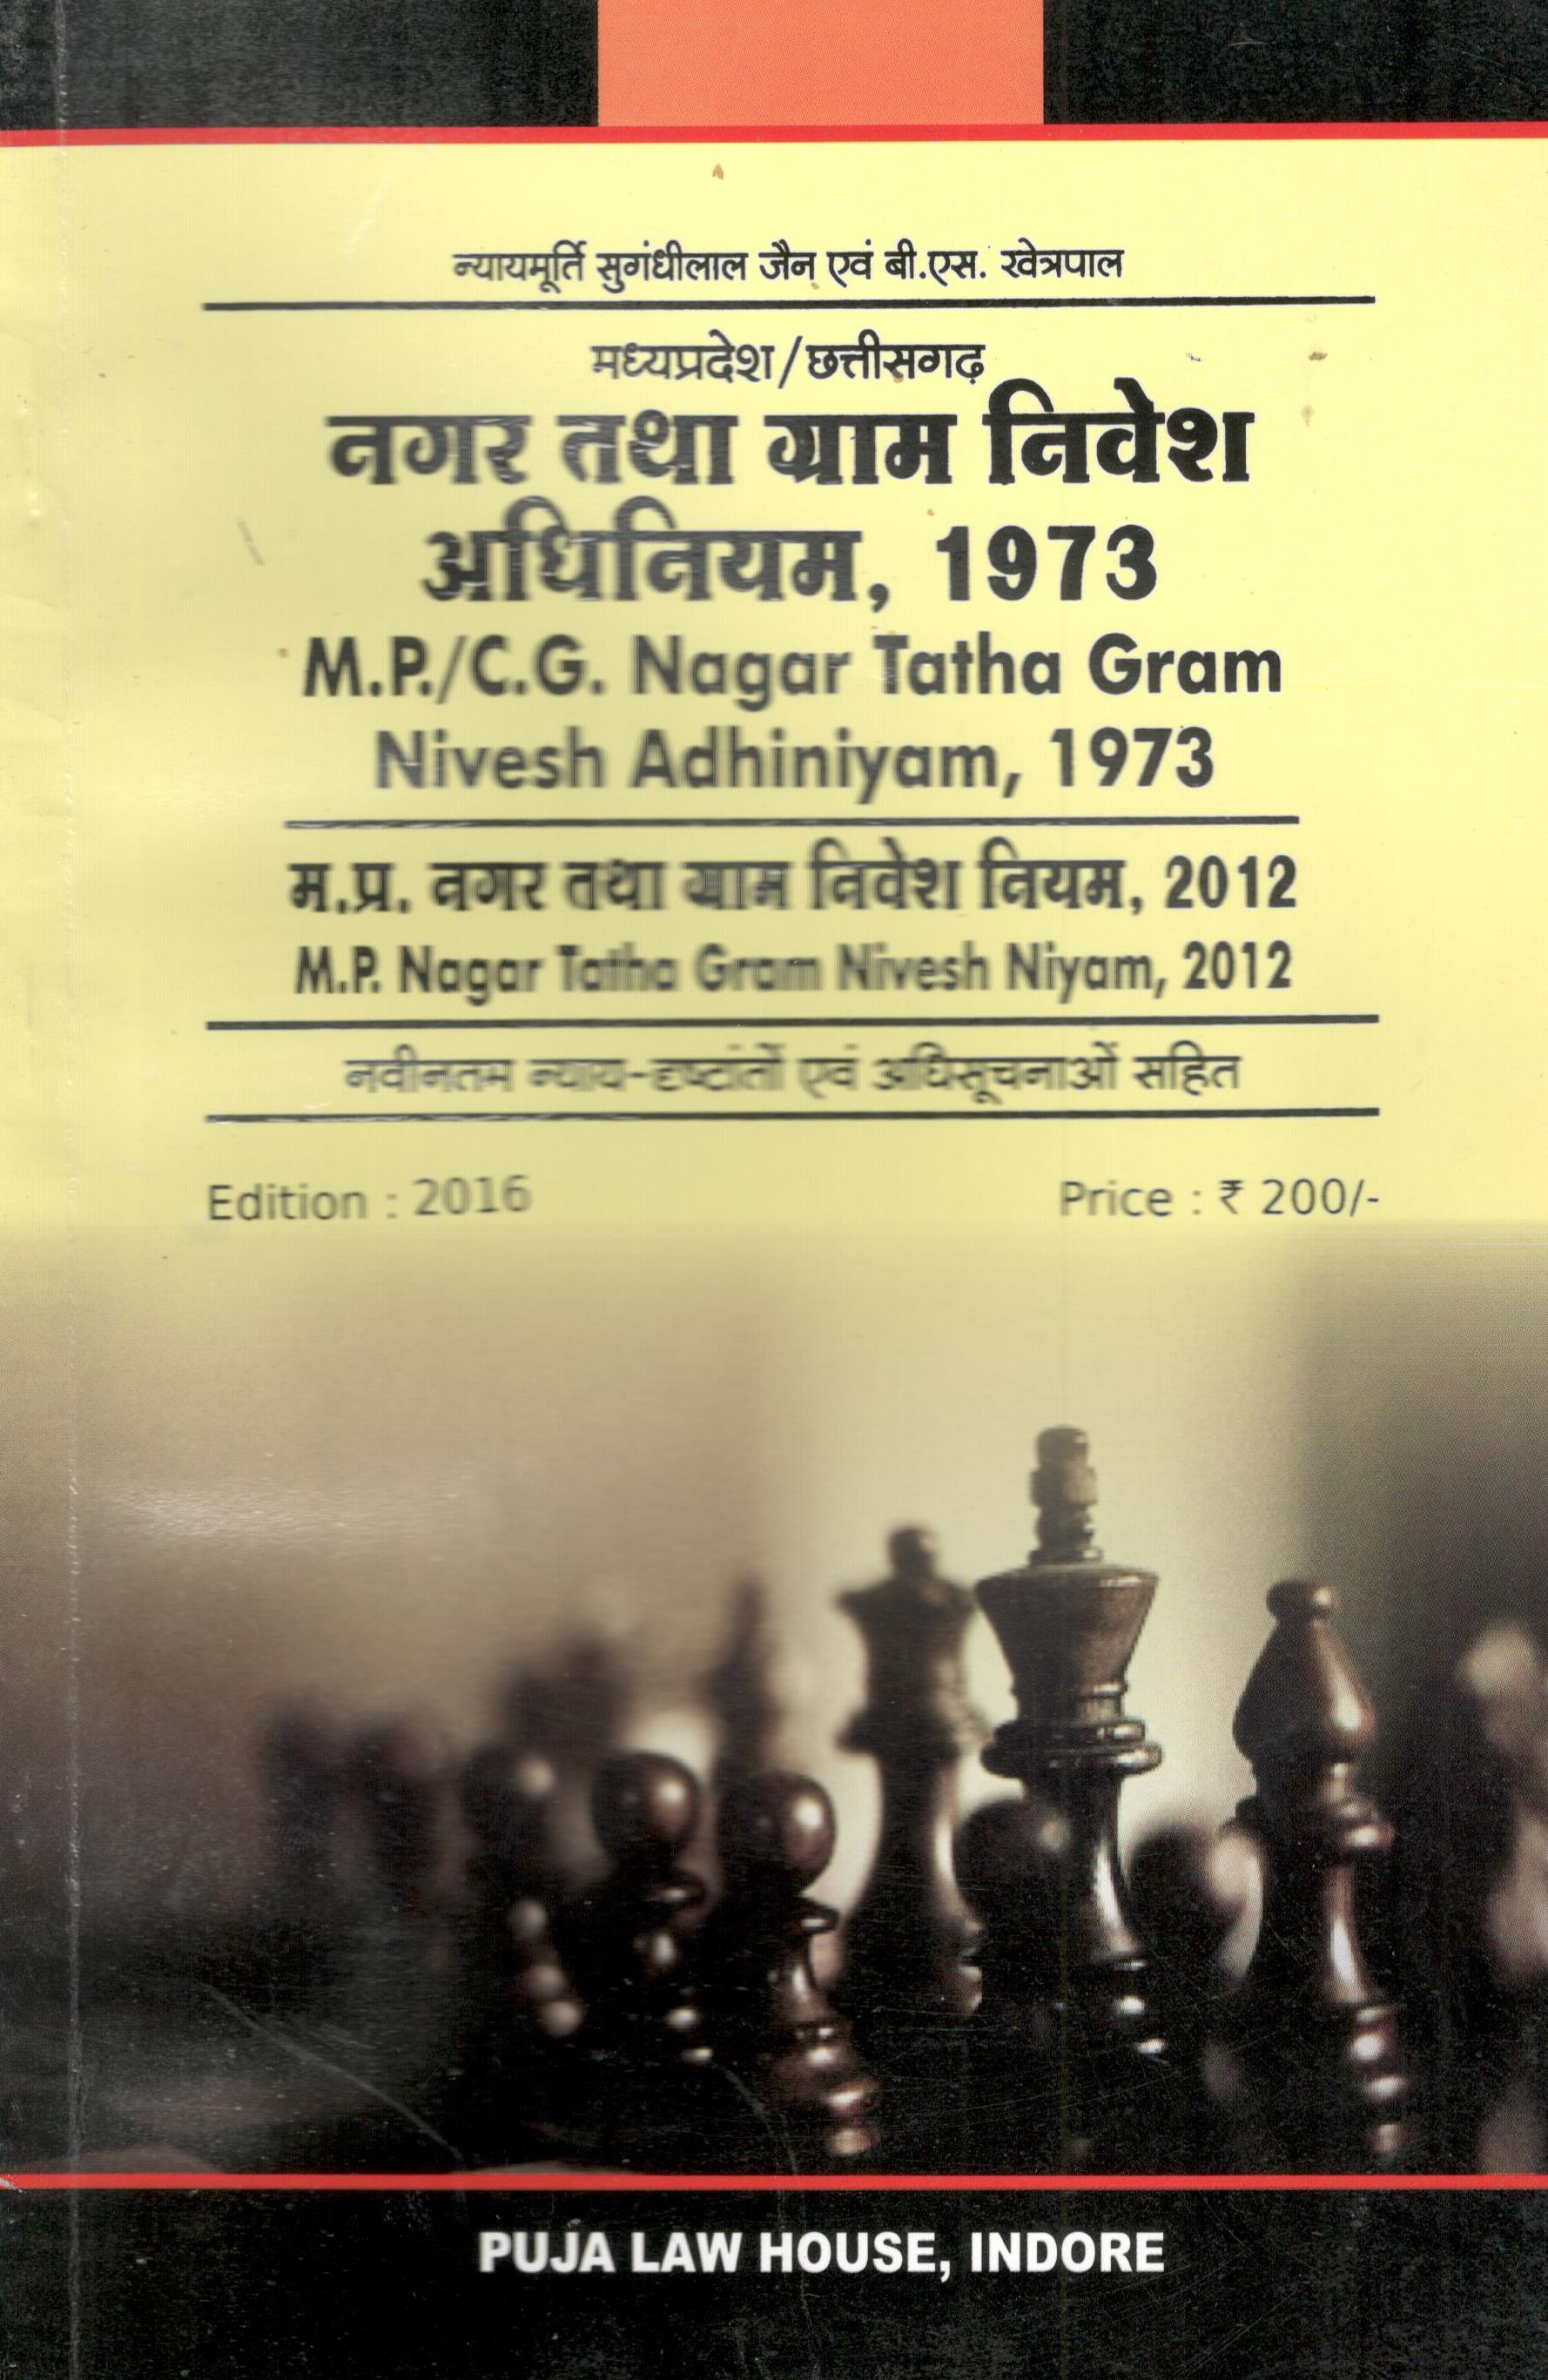  Buy मध्य प्रदेश नगर तथा ग्राम निवेश अधिनियम, 1973 एवं नियम, 2012 / Madhya Pradesh Nagar Tatha Gram Nivesh Act, 1973 & Rules, 2012